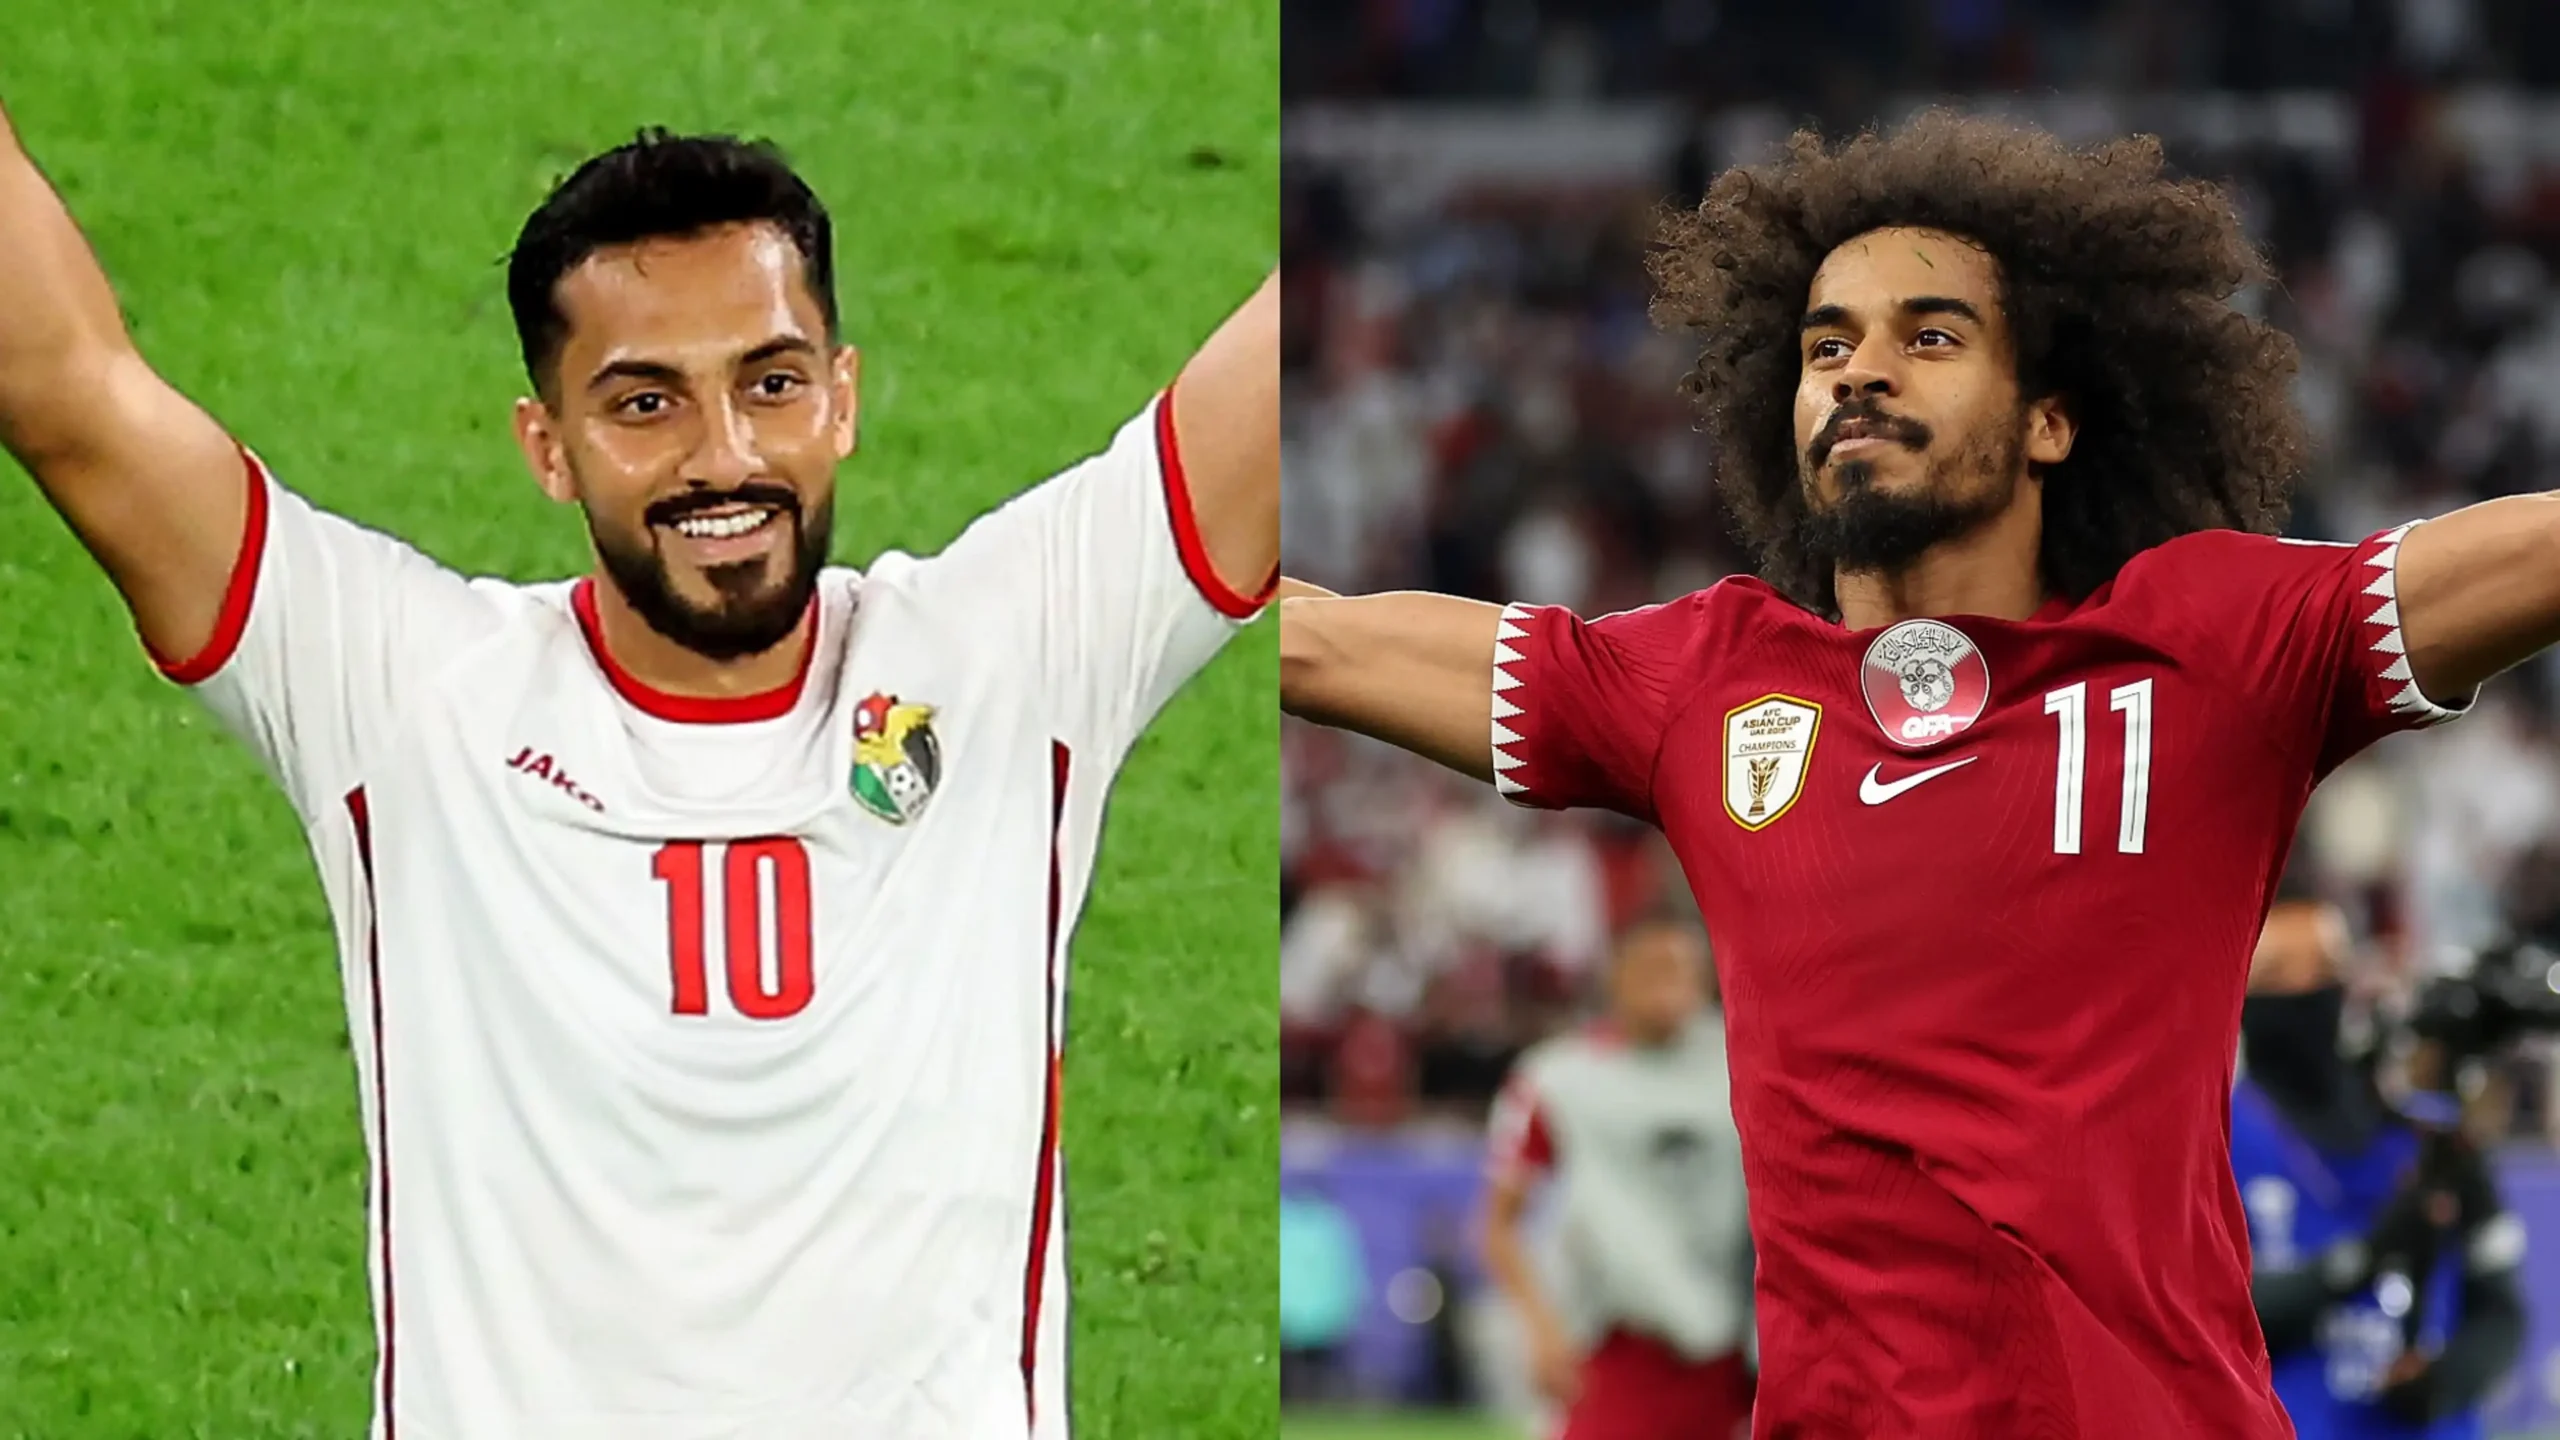 “النهائي العربي” موعد مباراة  قطر والأردن في نهائي كأس أسيا والقنوات الناقلة لها